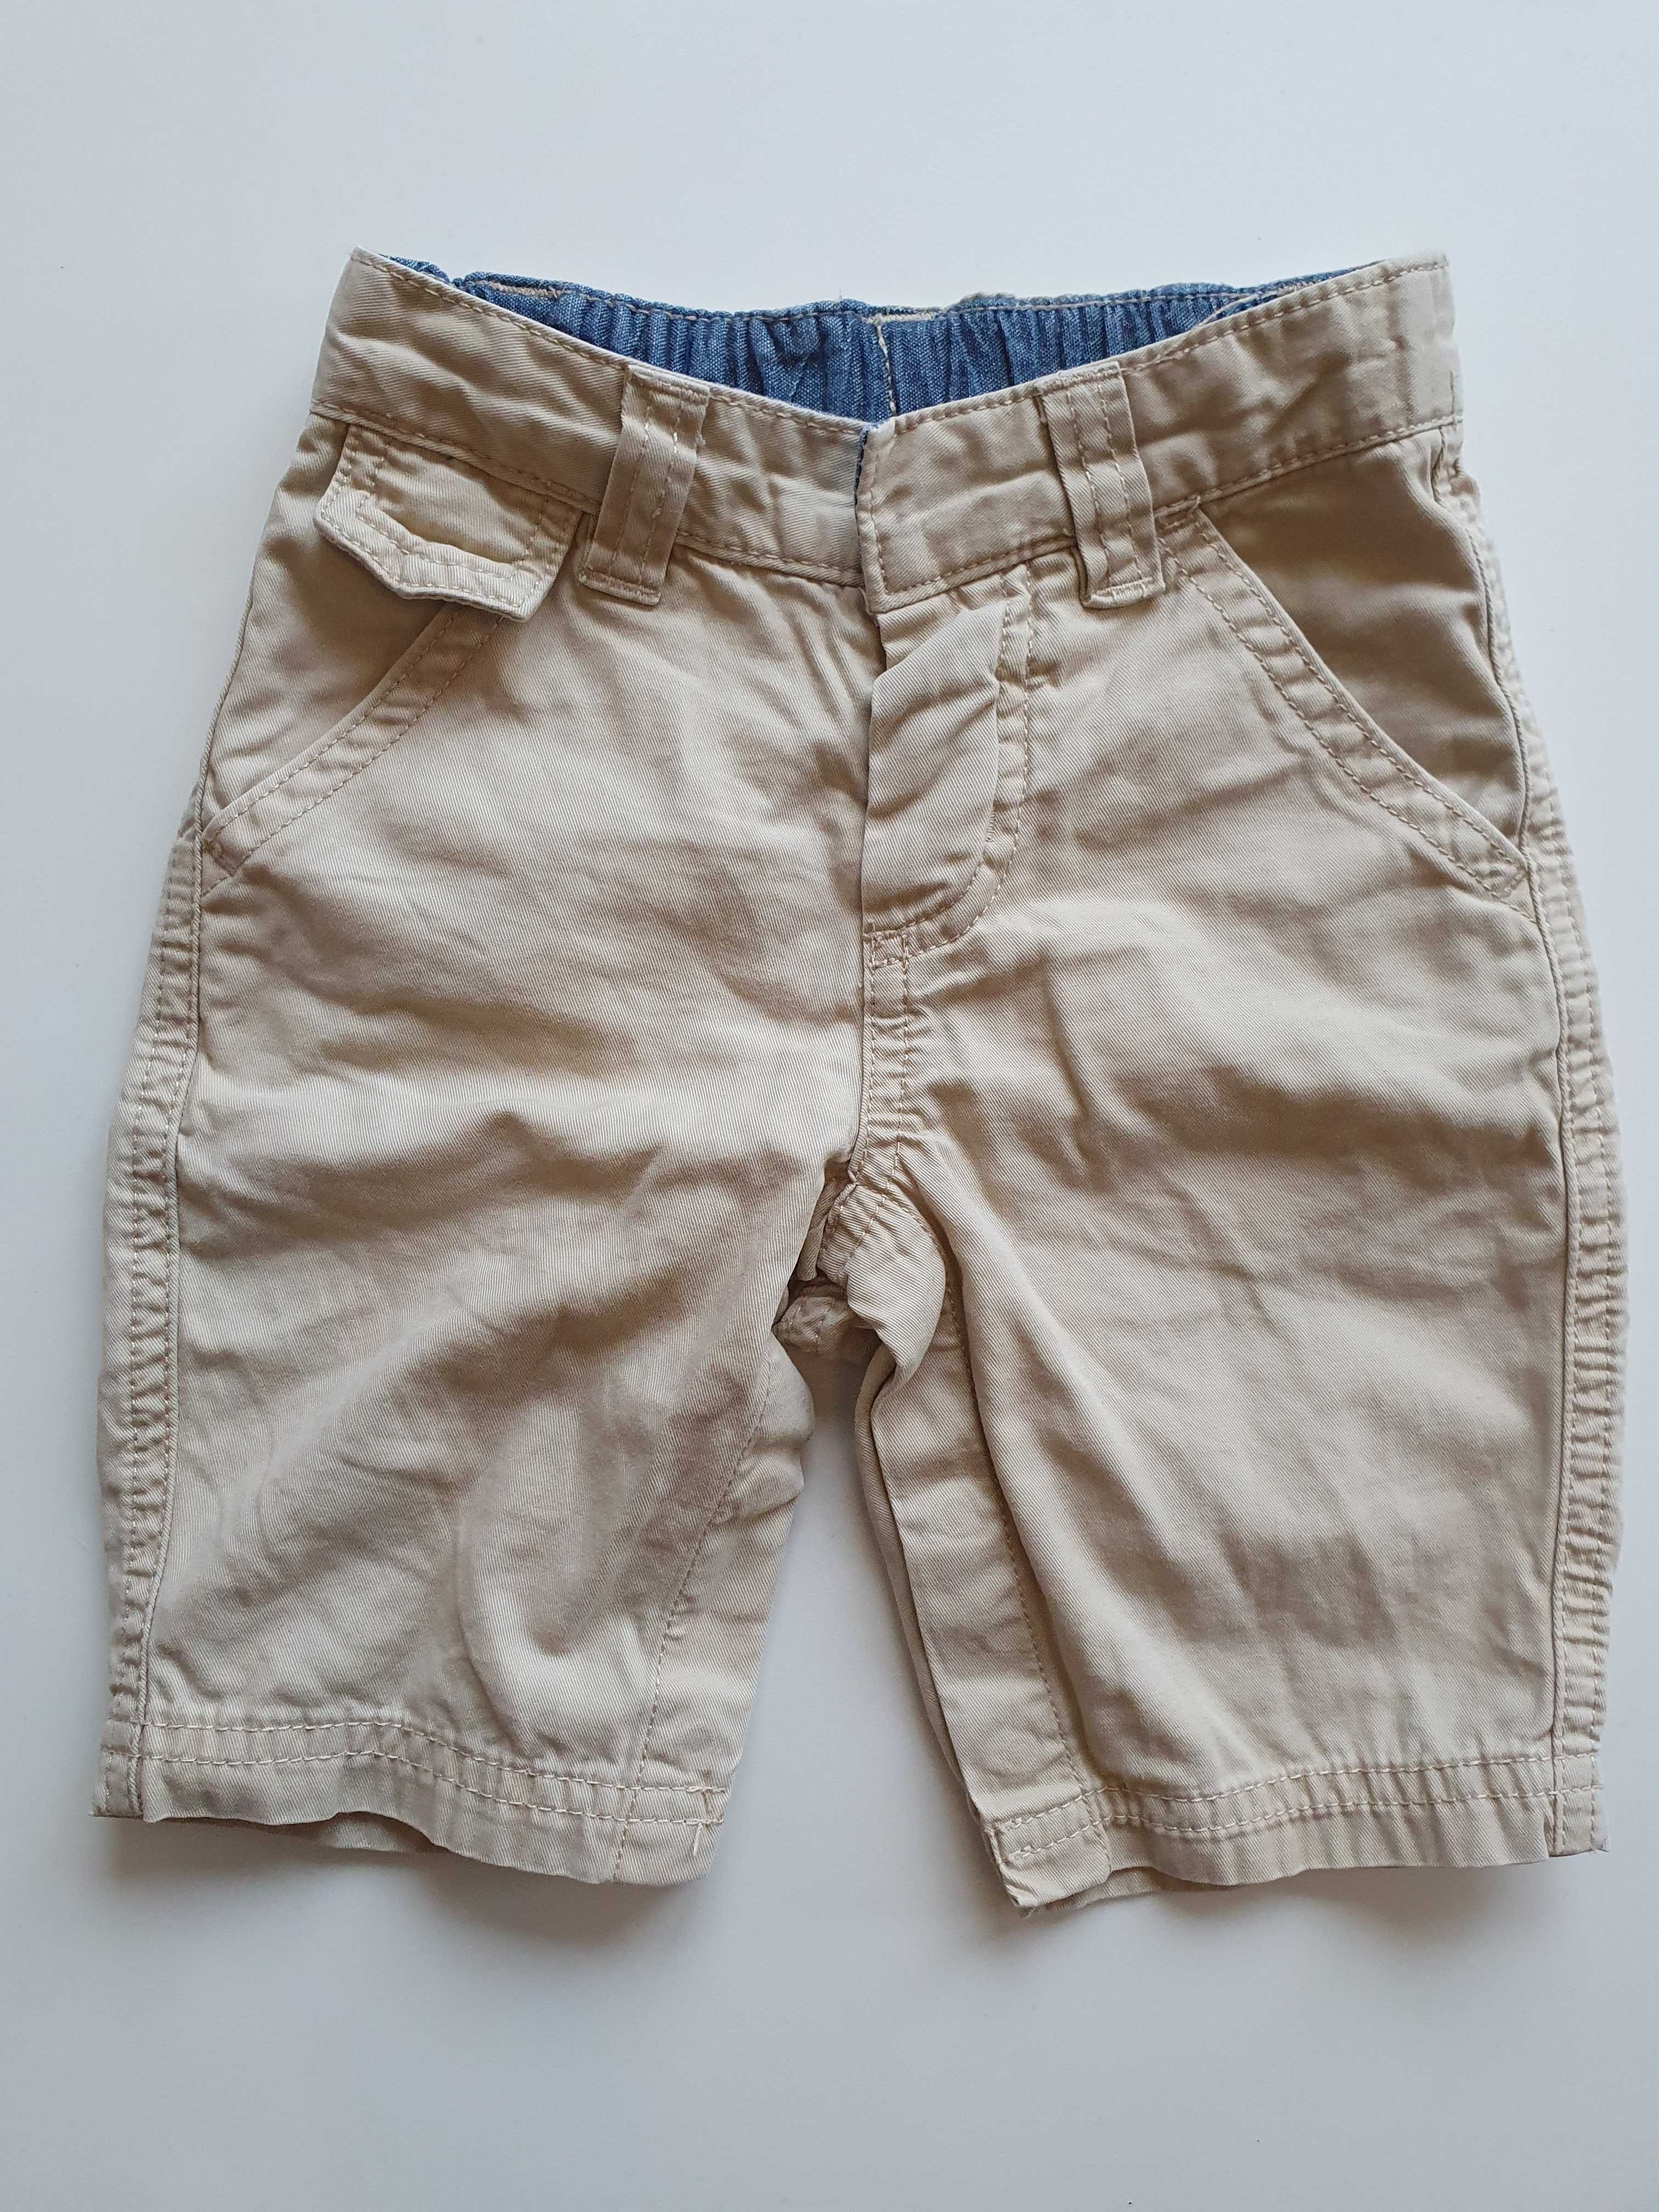 Spodnie Gap, eleganckie, beżowe, rozpinane na zatrzaski, roz 62-68